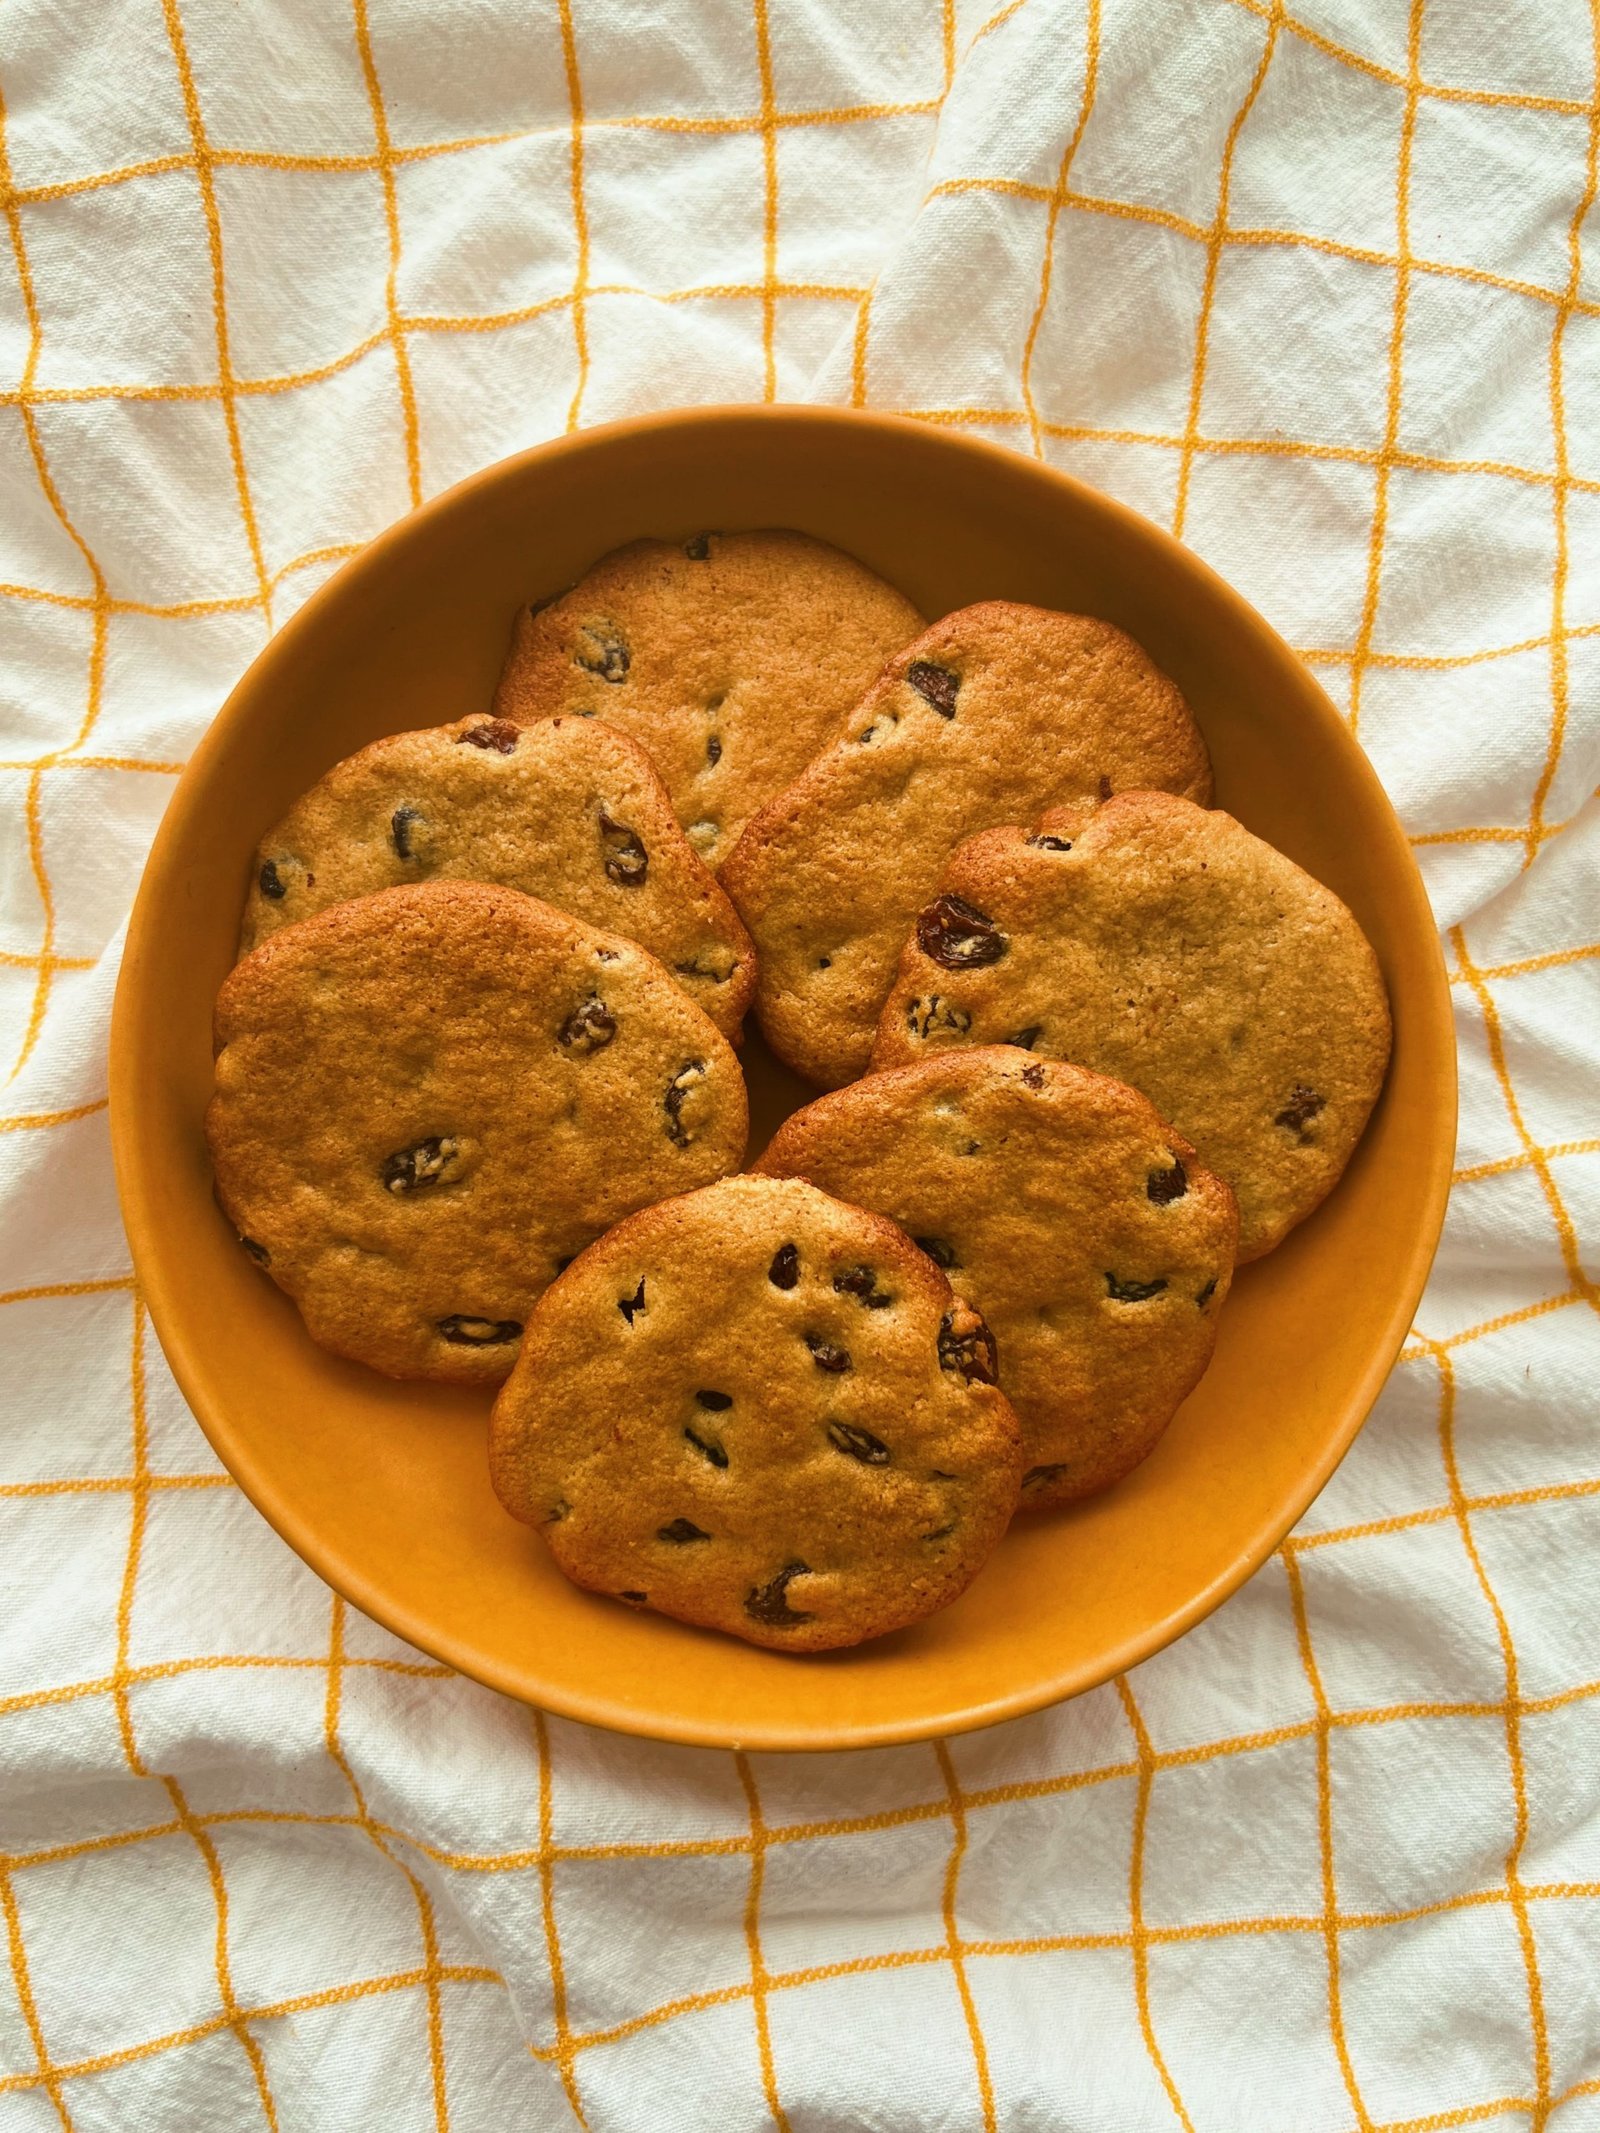 tahini raisin cookies (grain free)